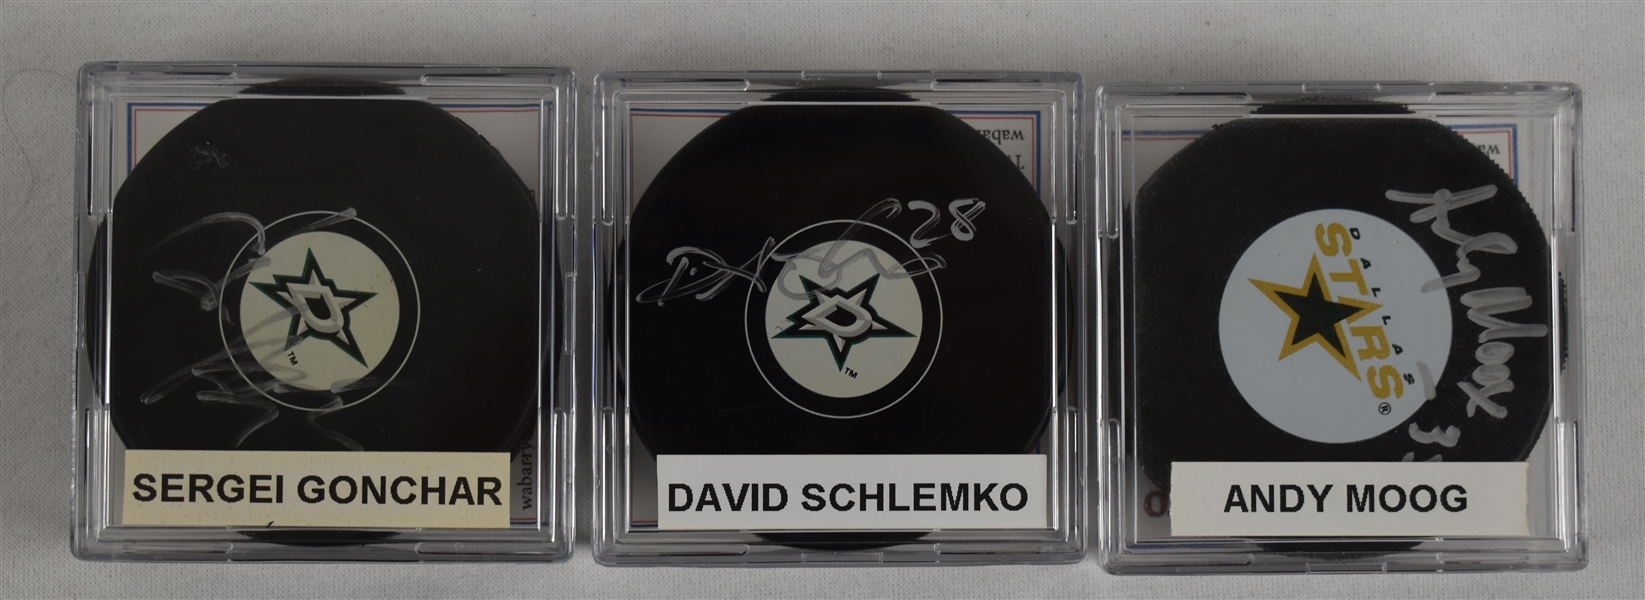 Schmelko Moog & Gonchar Lot of 3 Autographed Hockey Pucks w/Case